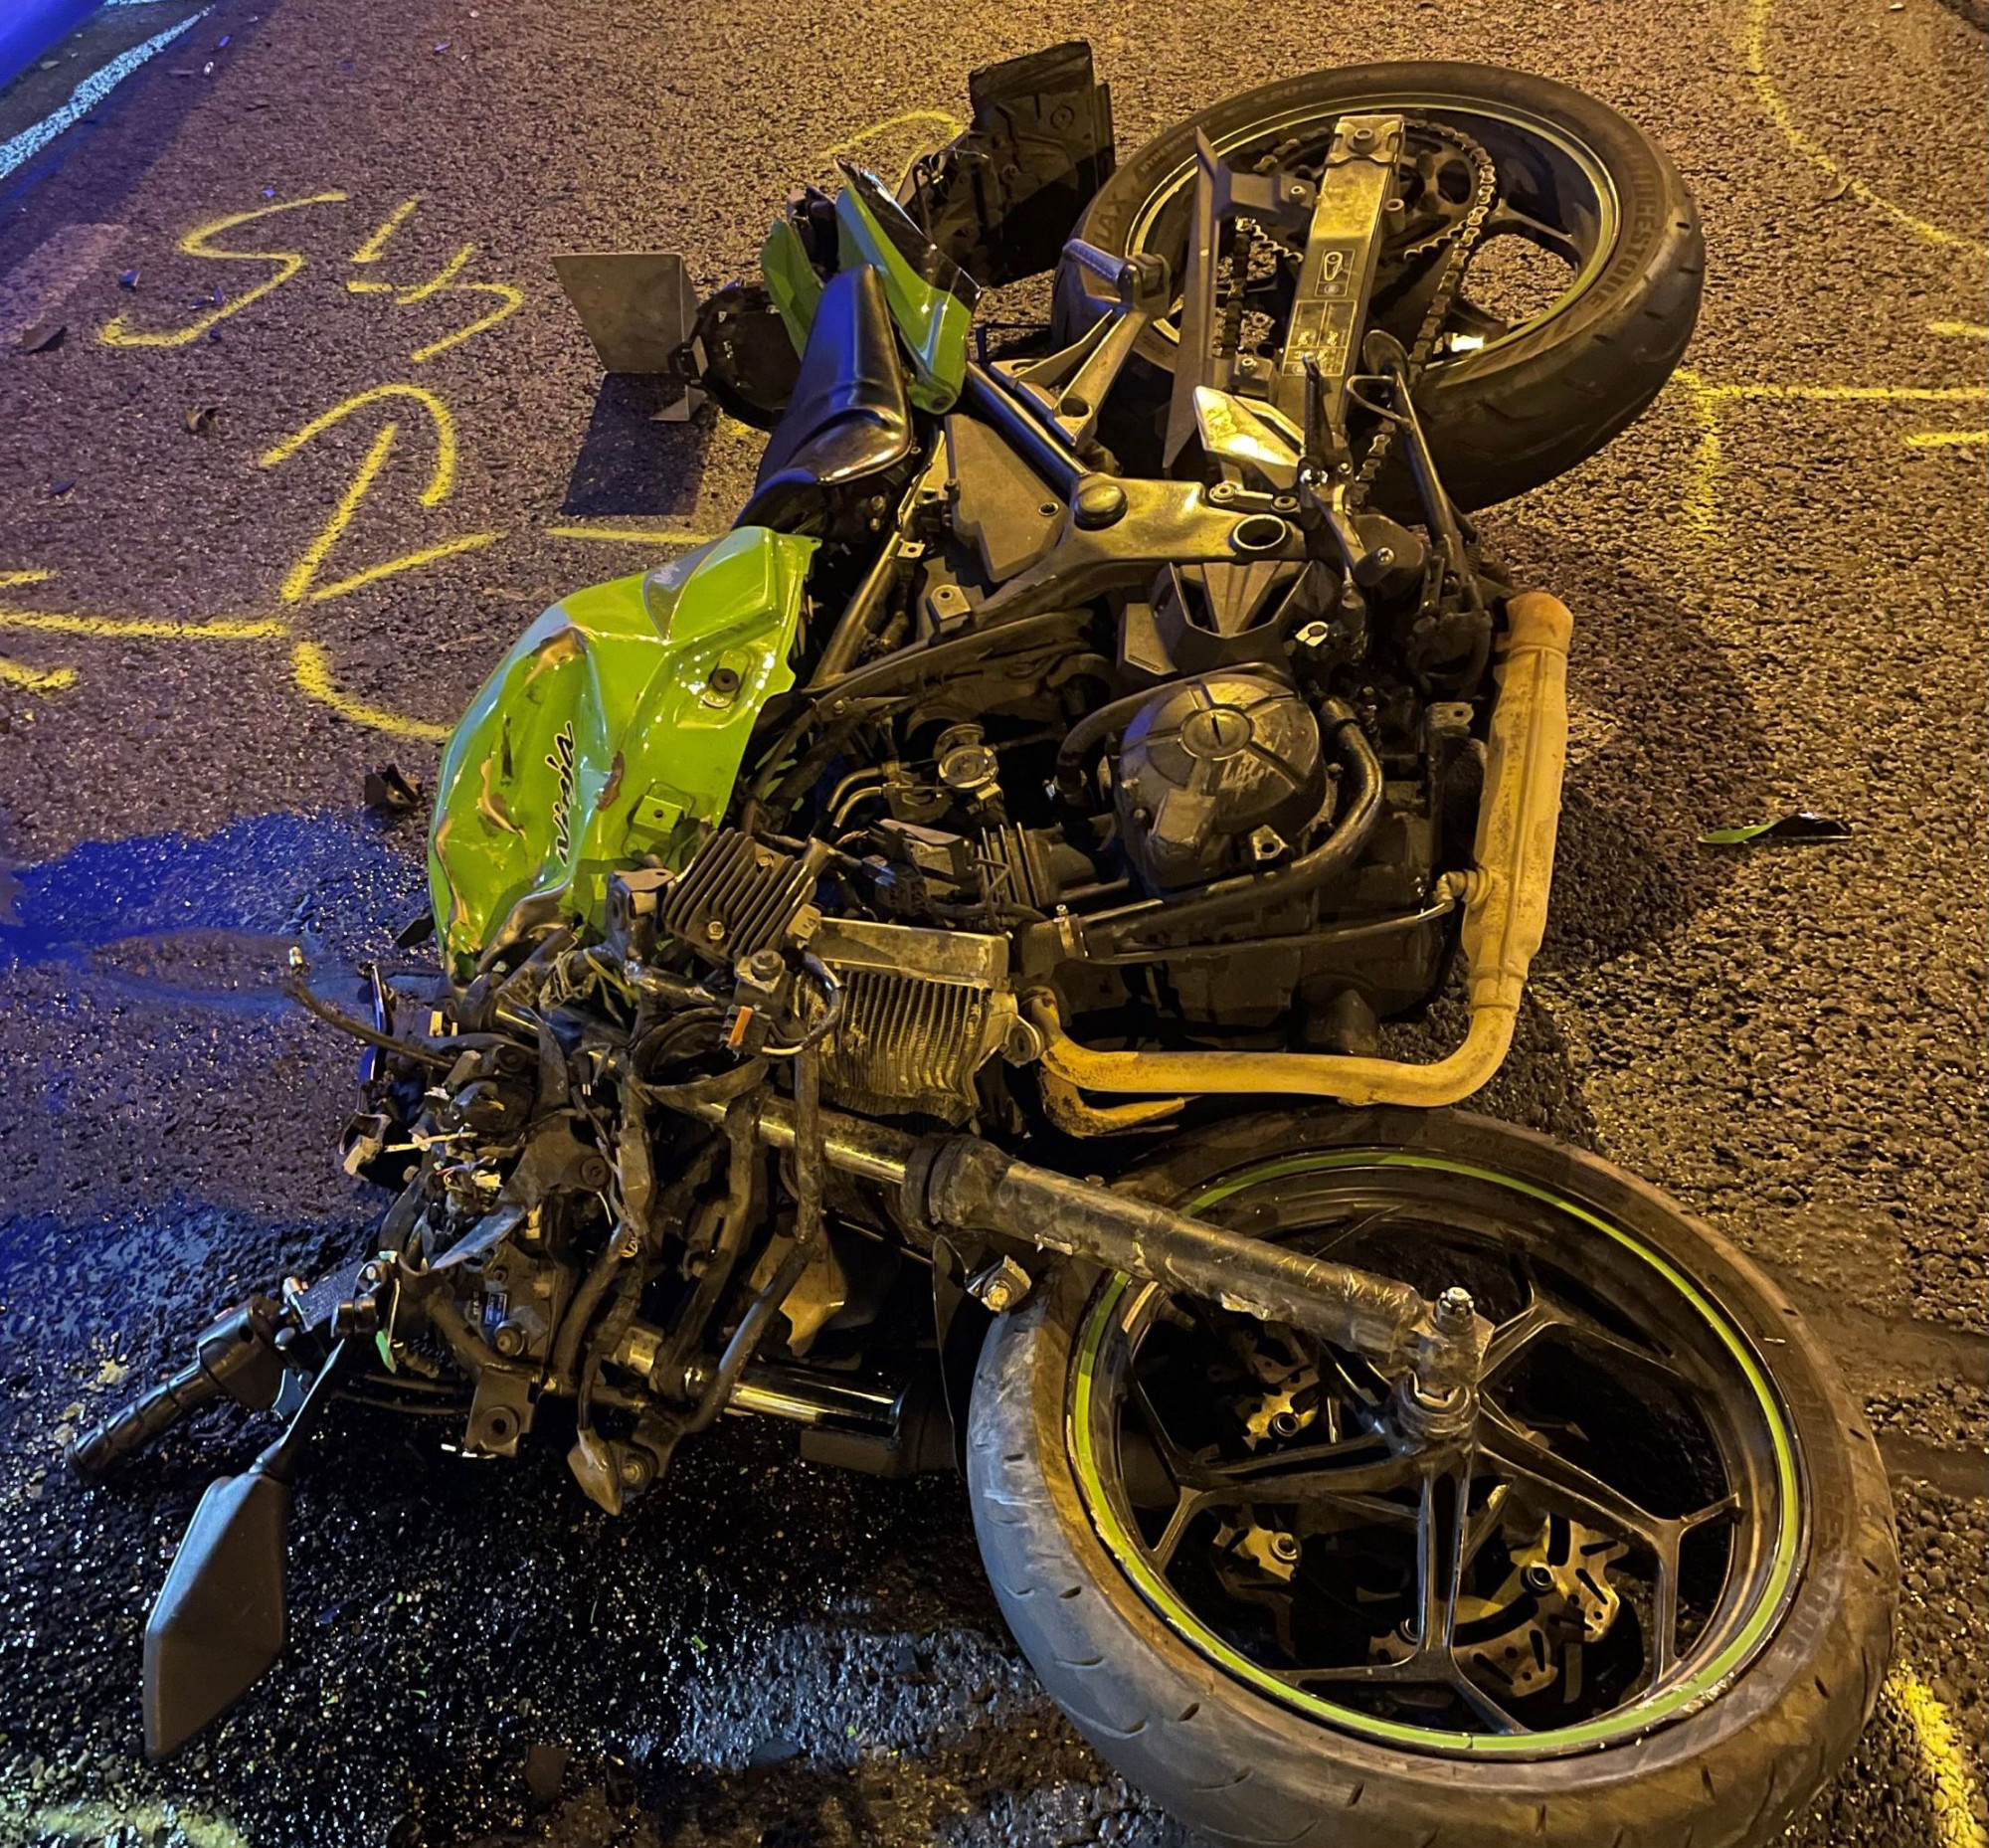 Meghalt egy motoros a Budaörsi úton, akit cserbenhagytak egy Mercedesszel való ütközés után